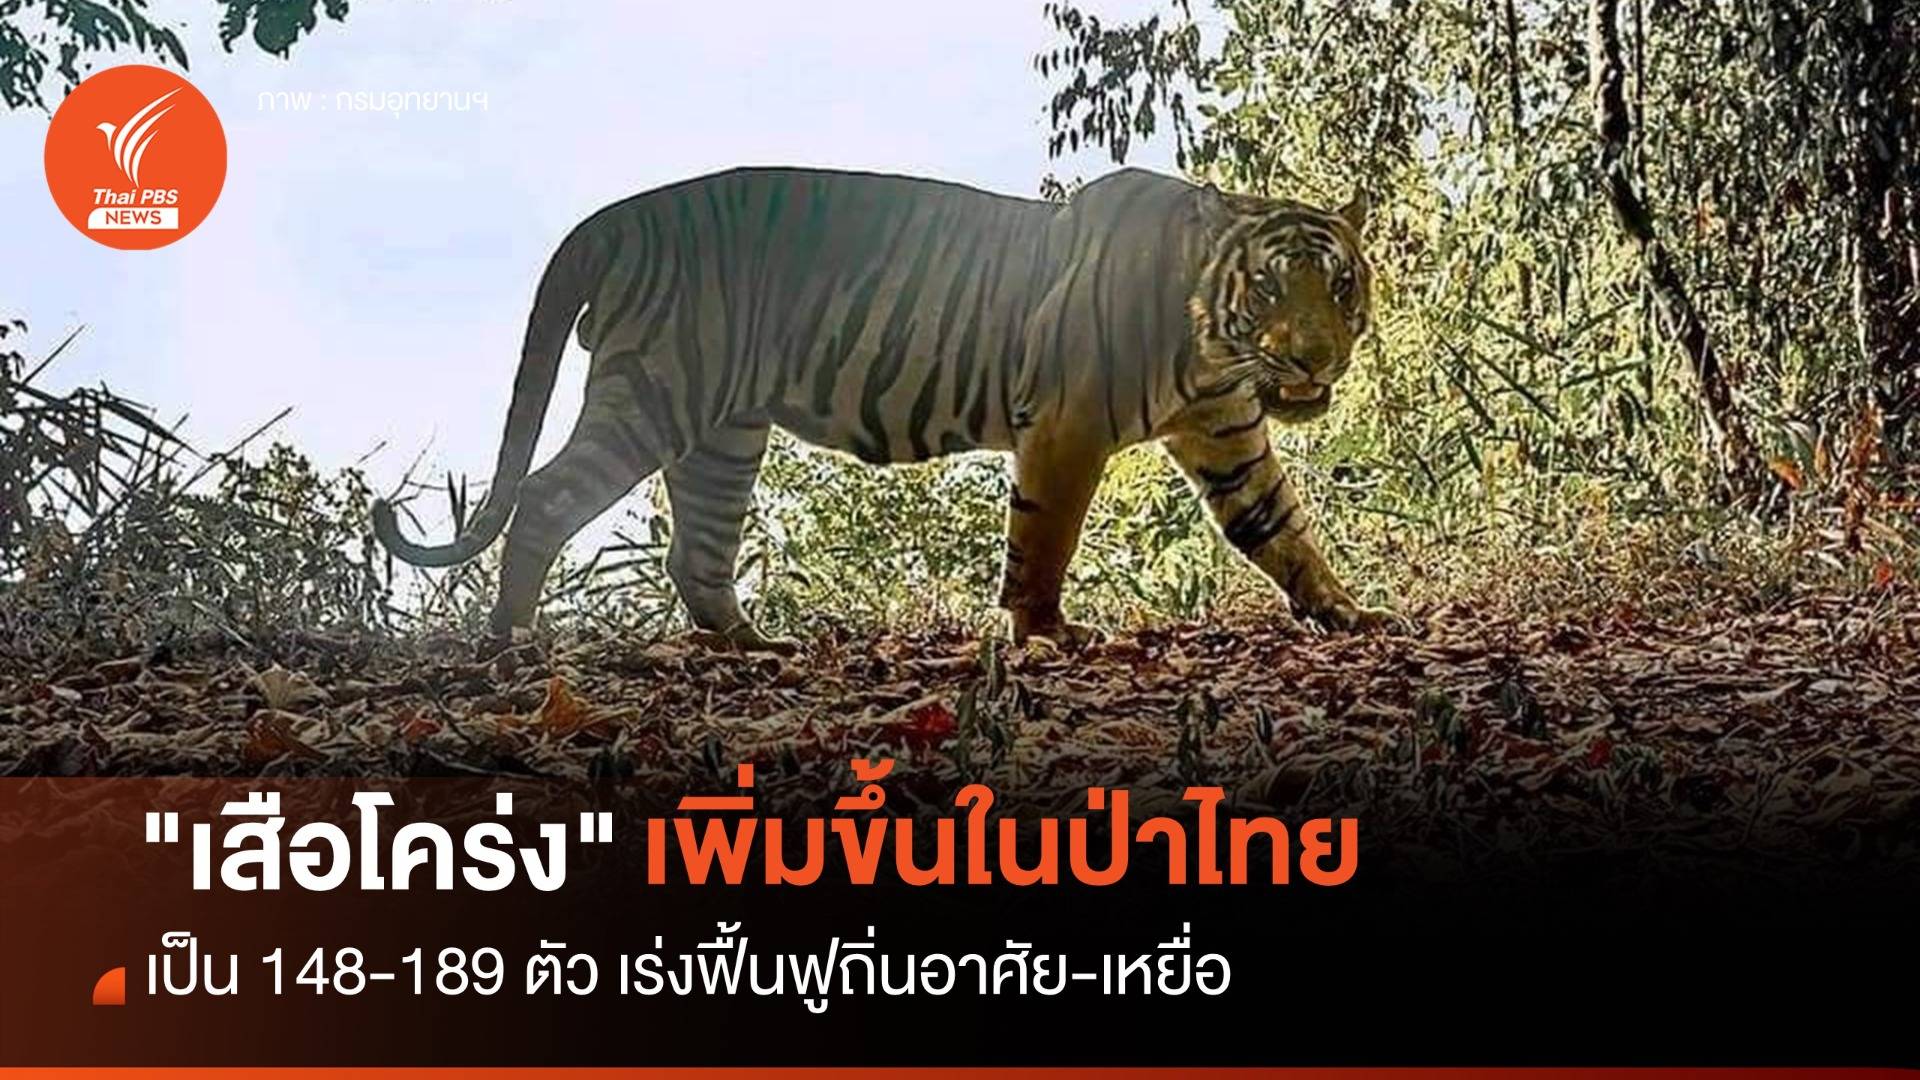 "เสือโคร่ง" ในป่าไทยเพิ่มเป็น 148-189 ตัว เร่งฟื้นฟูเหยื่อ-ถิ่นอาศัย